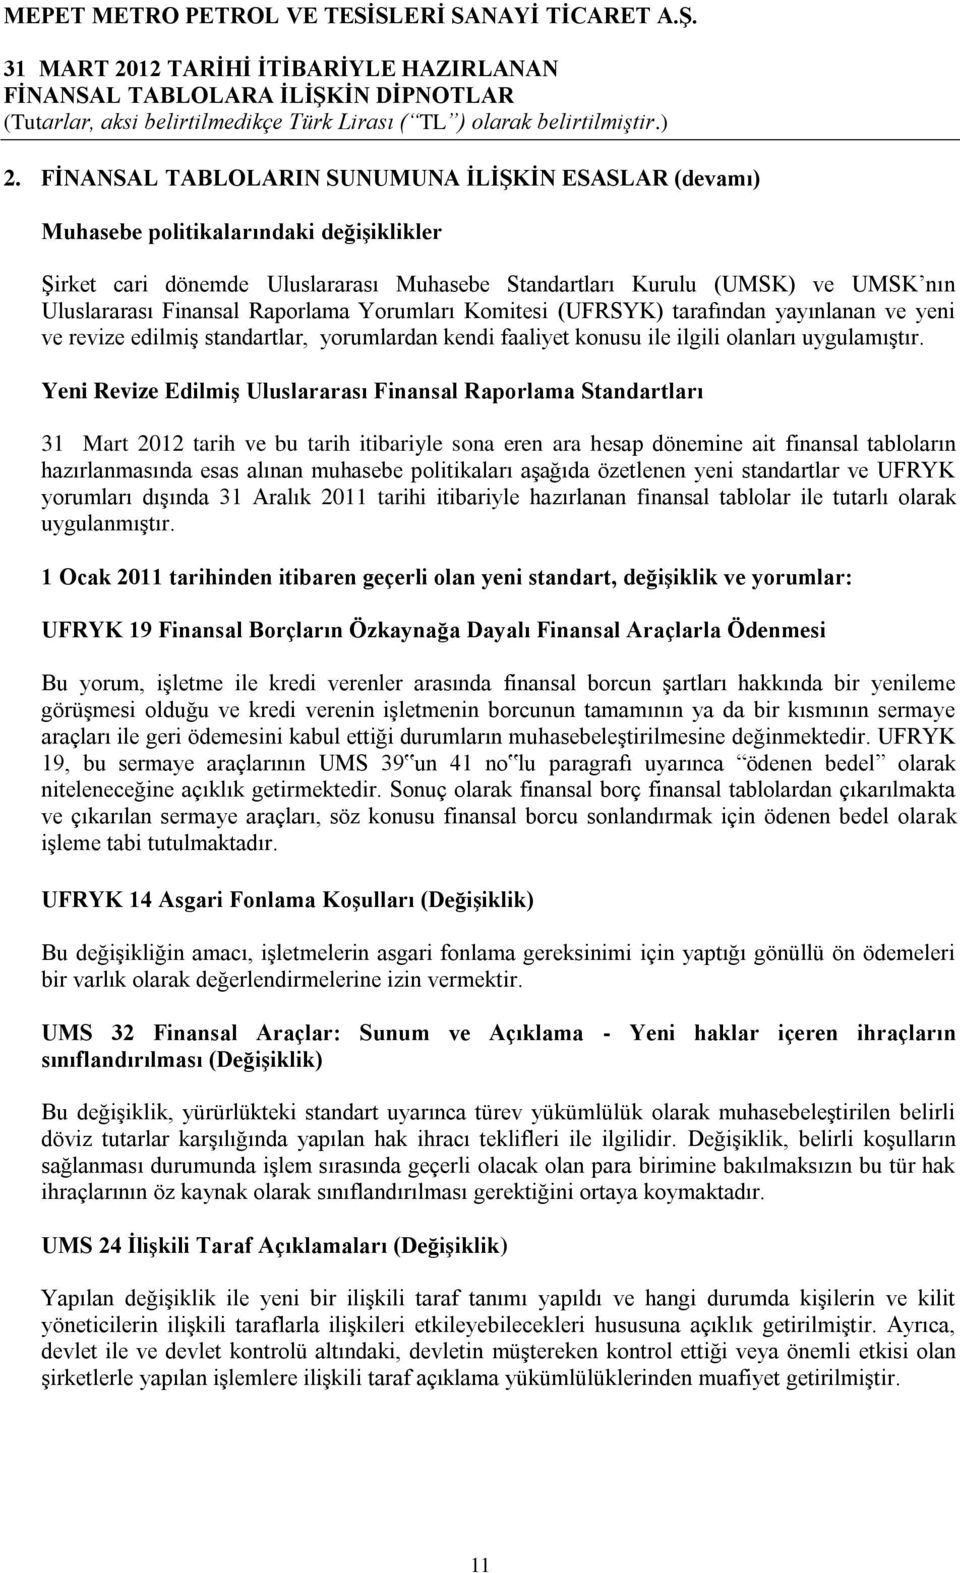 Yeni Revize EdilmiĢ Uluslararası Finansal Raporlama Standartları 31 Mart 2012 tarih ve bu tarih itibariyle sona eren ara hesap dönemine ait finansal tabloların hazırlanmasında esas alınan muhasebe